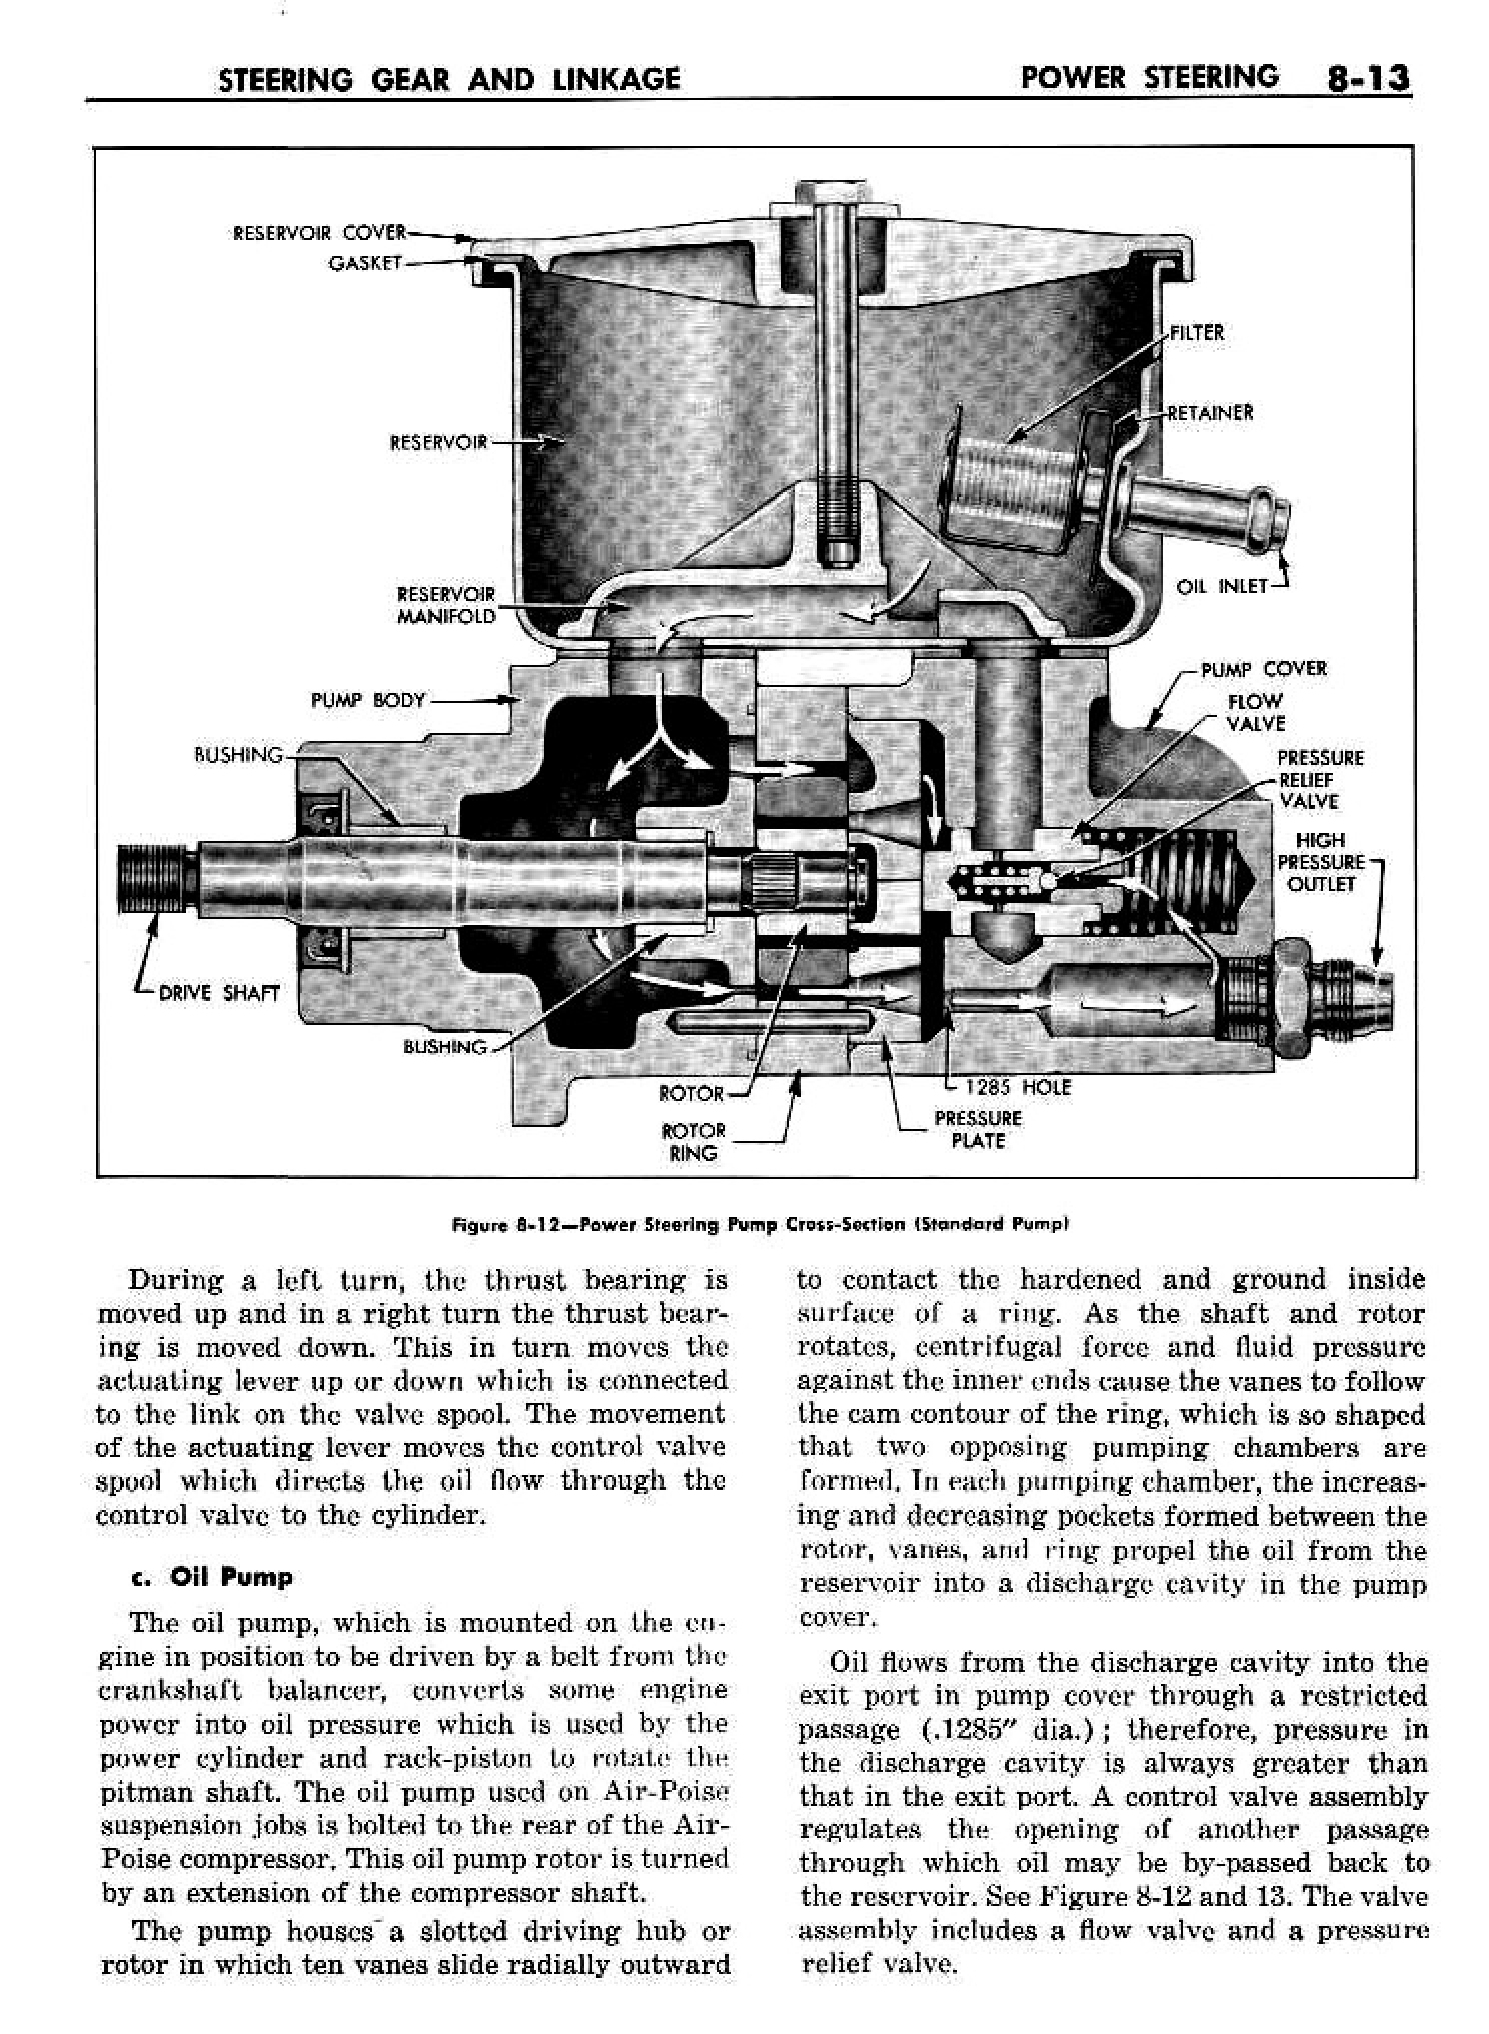 n_09 1958 Buick Shop Manual - Steering_13.jpg